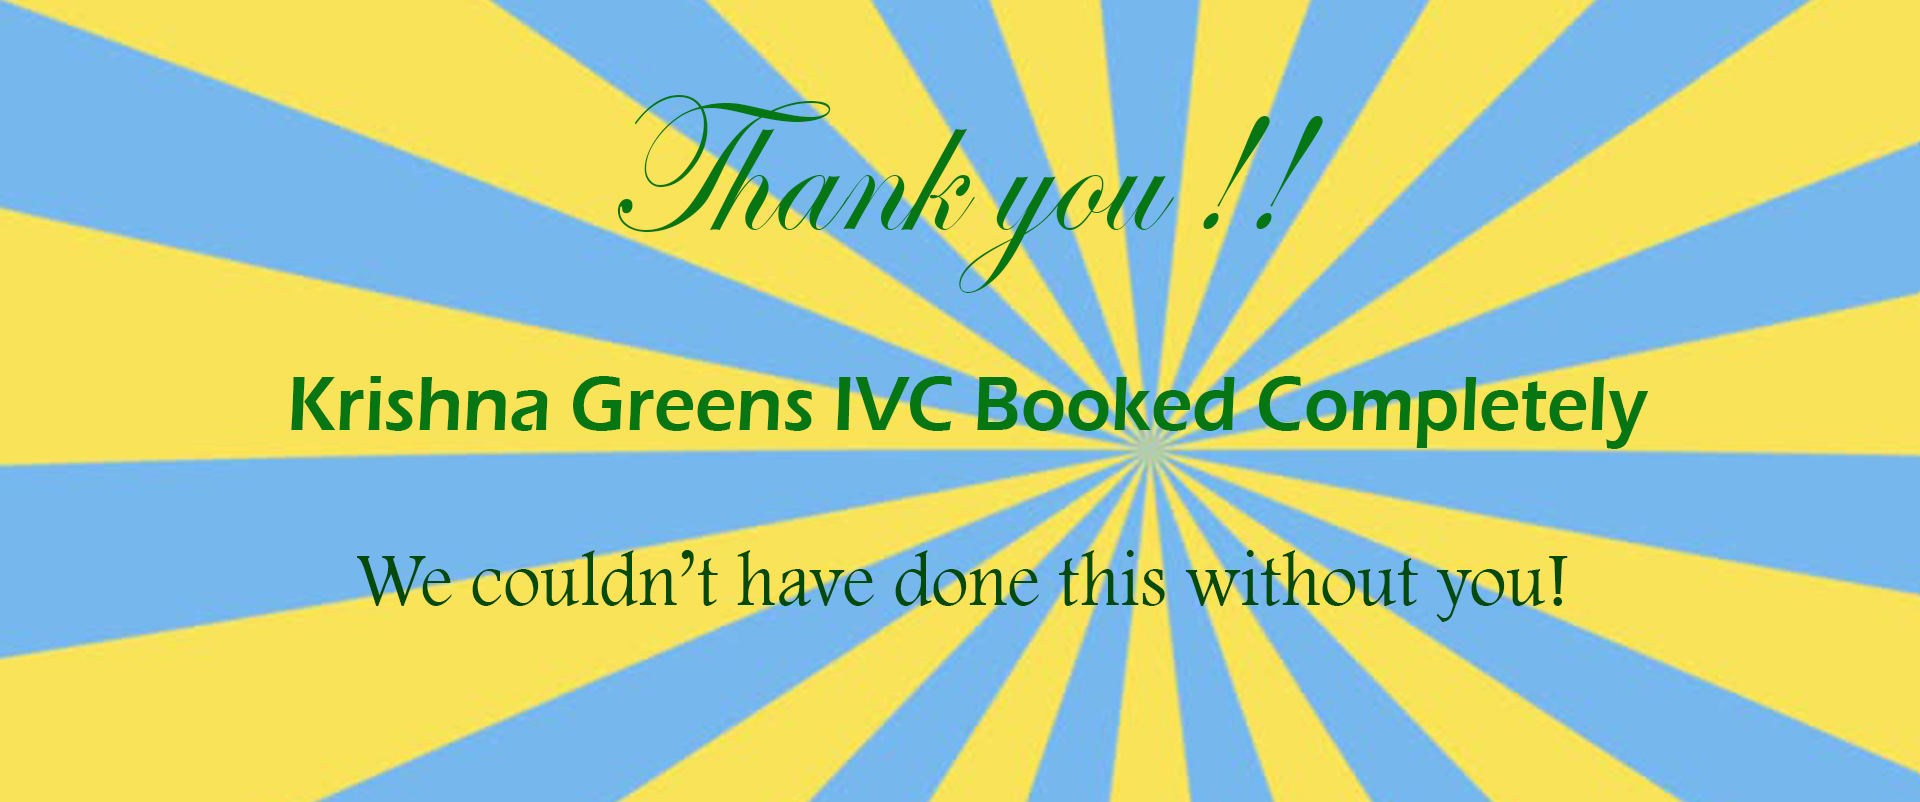 Krishna Greens IVC